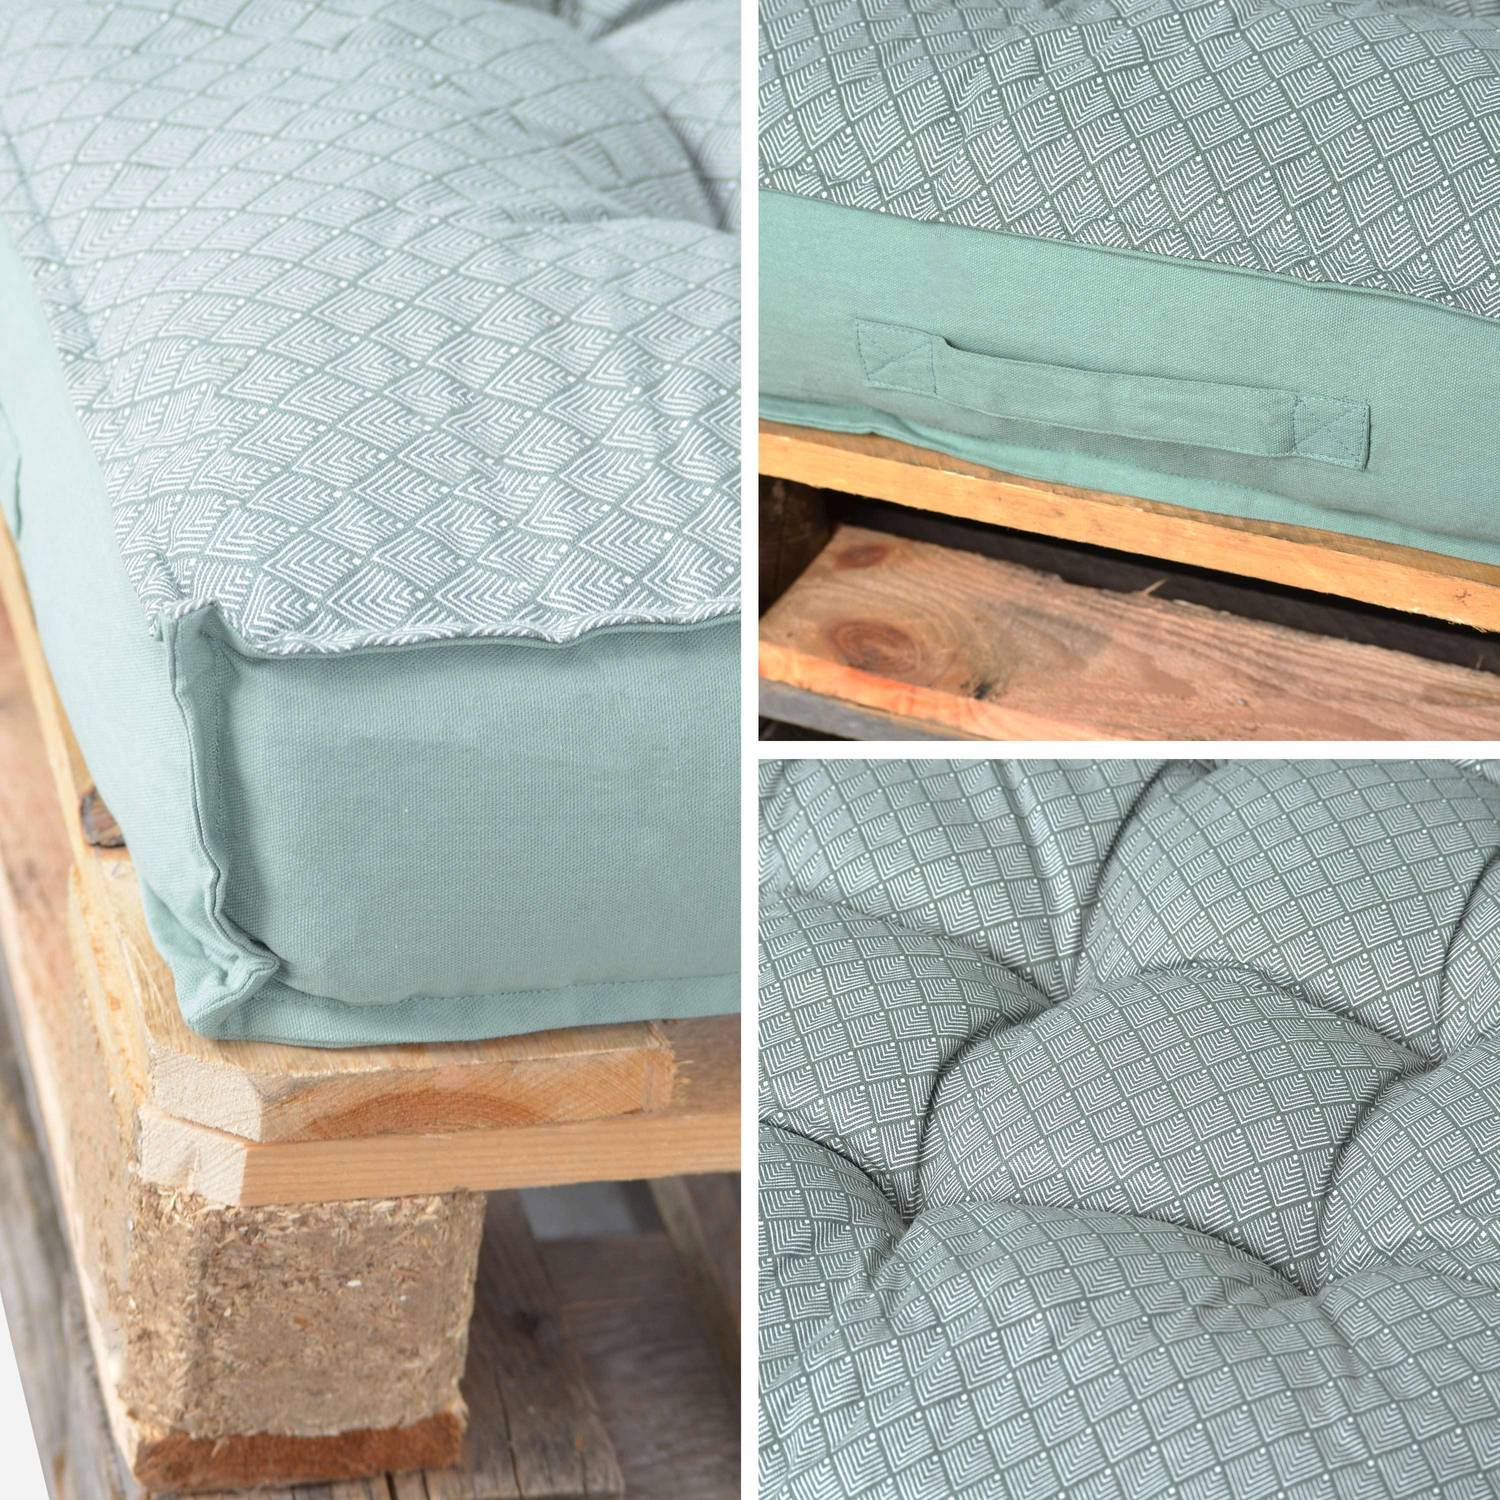 Kissen für Palette - 120 x 80 cm - Matratze, Sitzkissen, wendbar, 100% Baumwolle, graugrün, Palette nicht inbegriffen Photo5